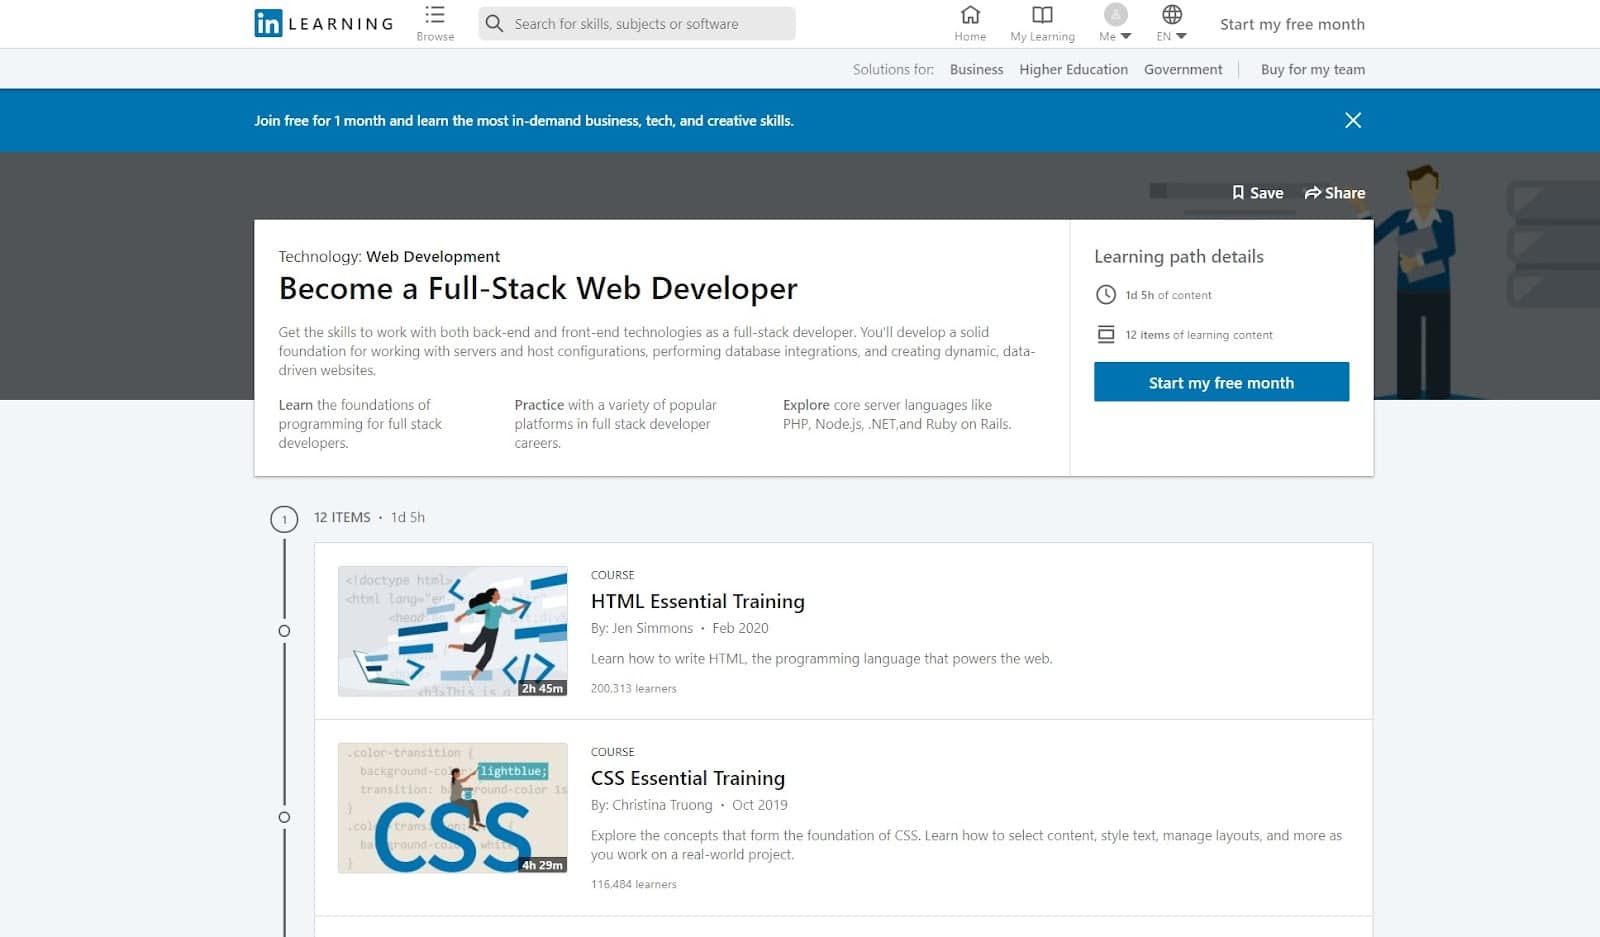 Screenshot of LinkedIn Learning's full-stack developer course